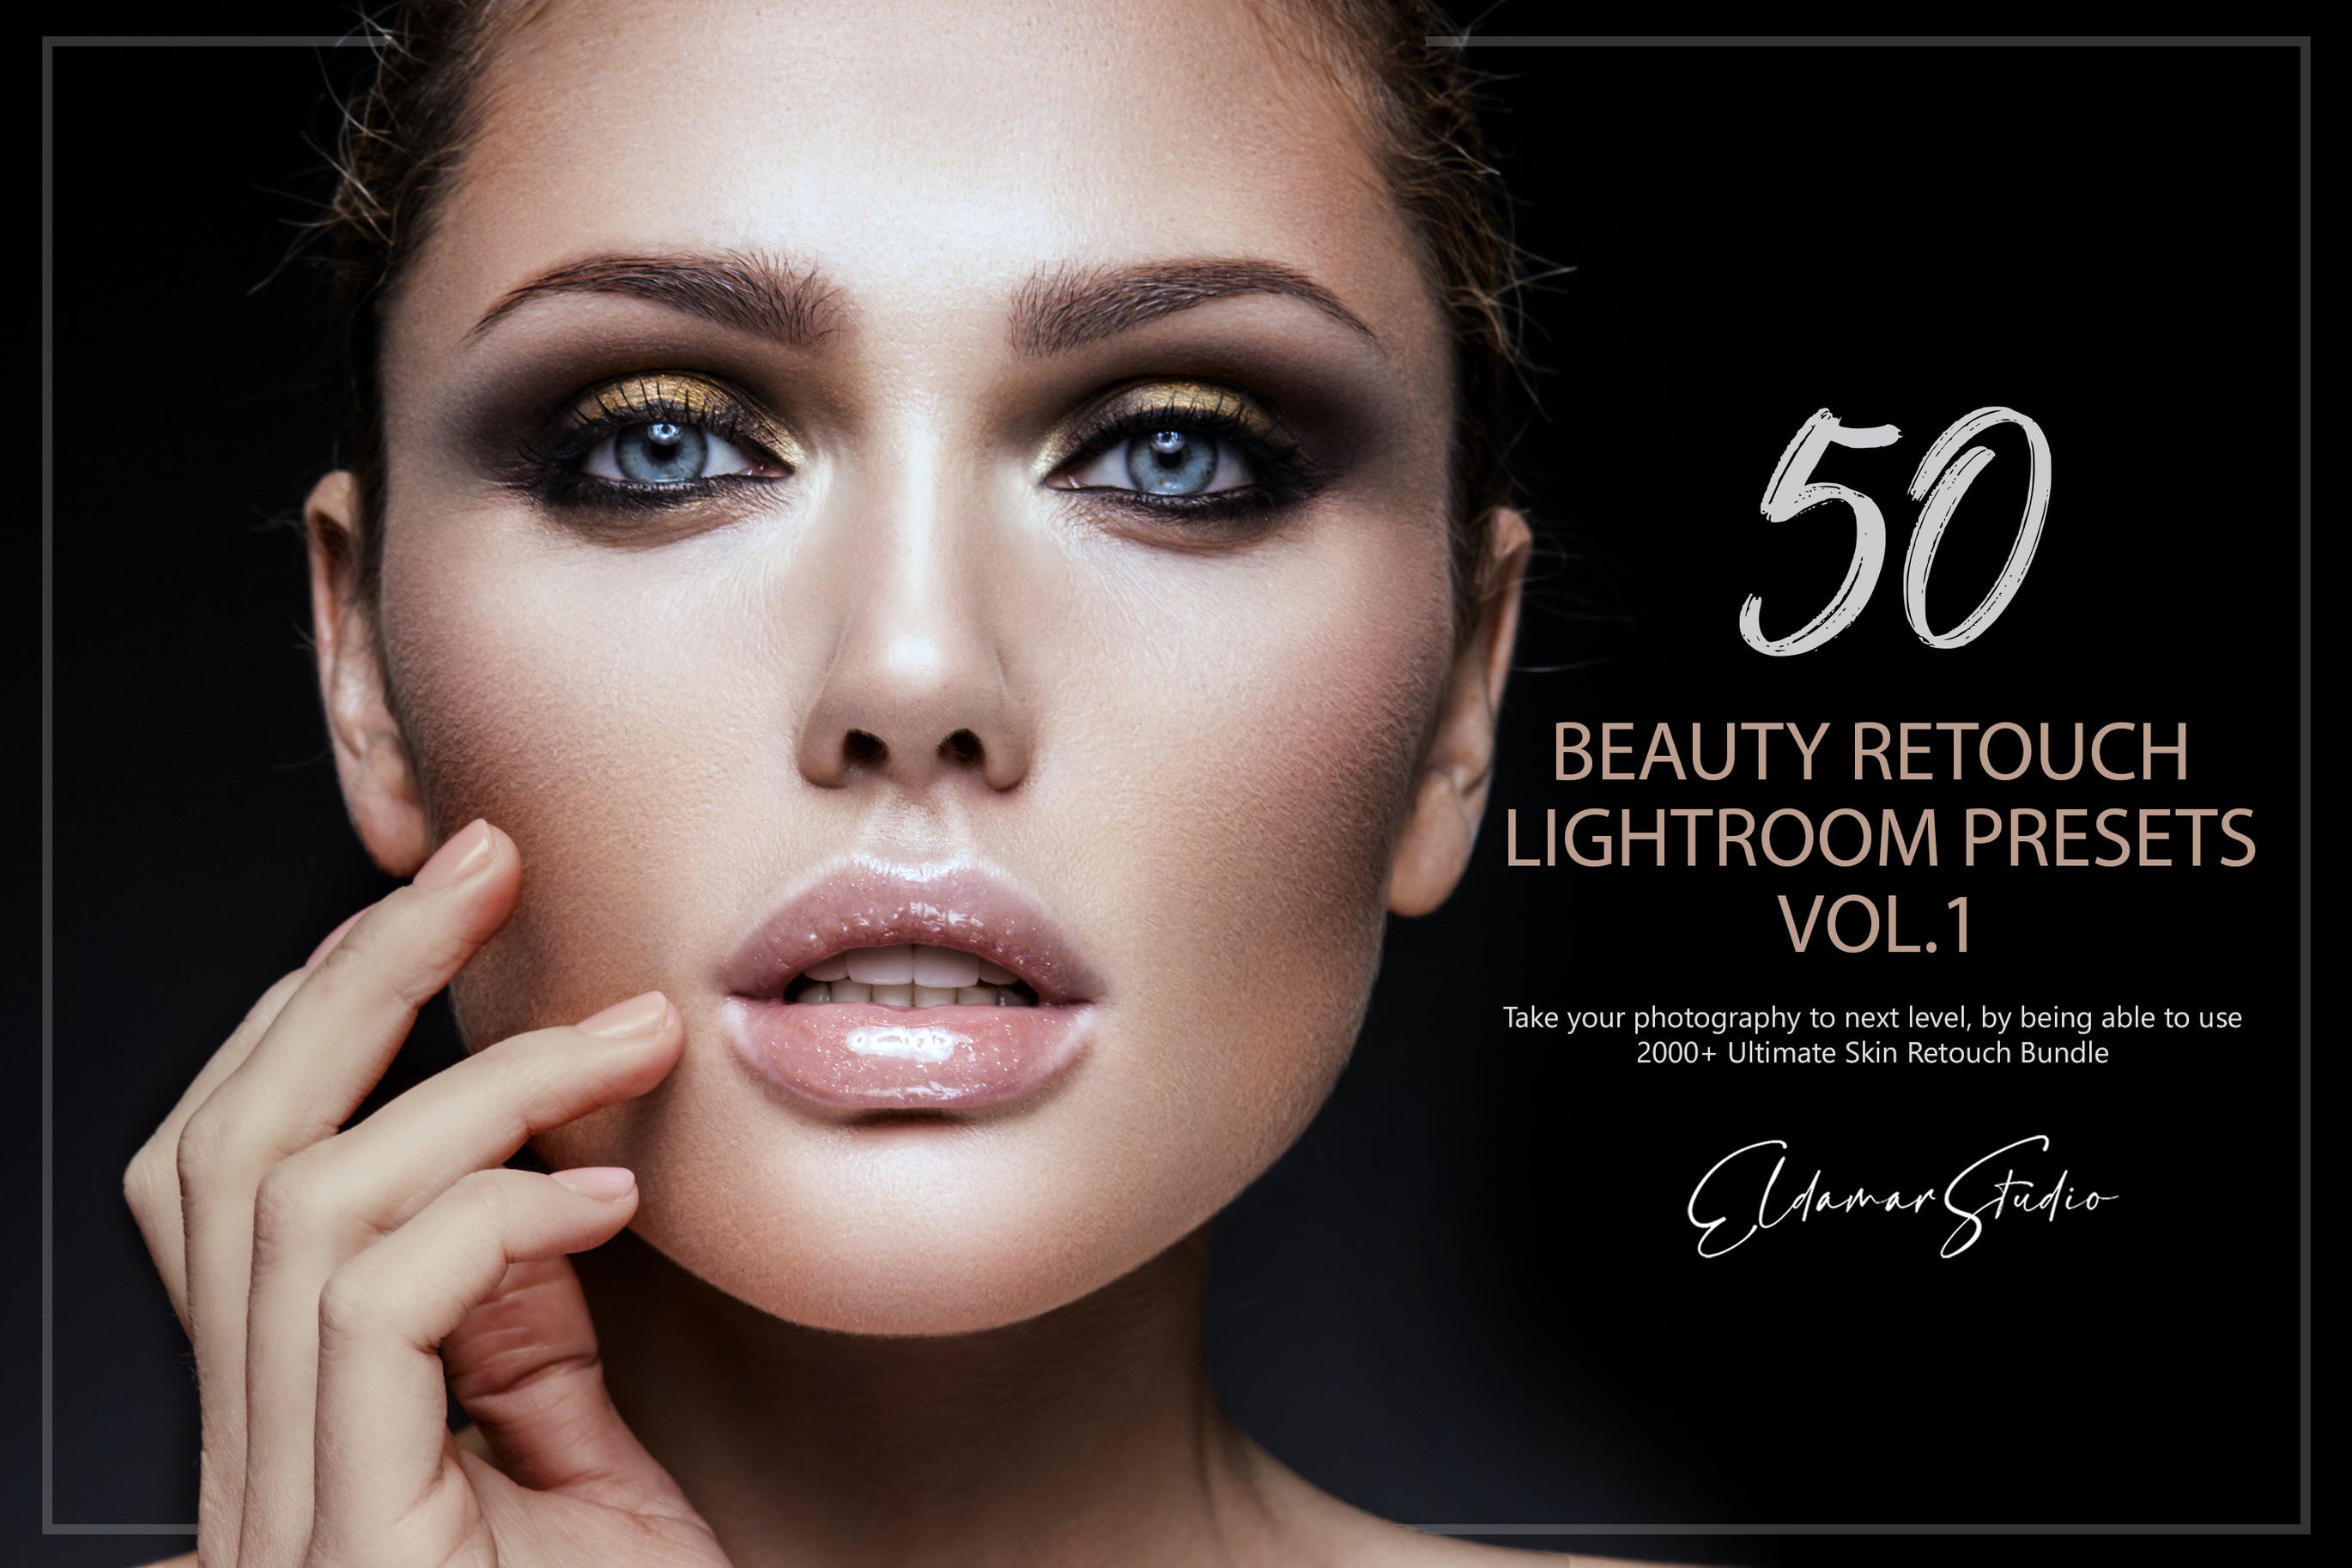 50个美容修饰照片调色滤镜LR预设v1 50 Beauty Retouch Lightroom Presets – Vol. 1 插件预设 第1张